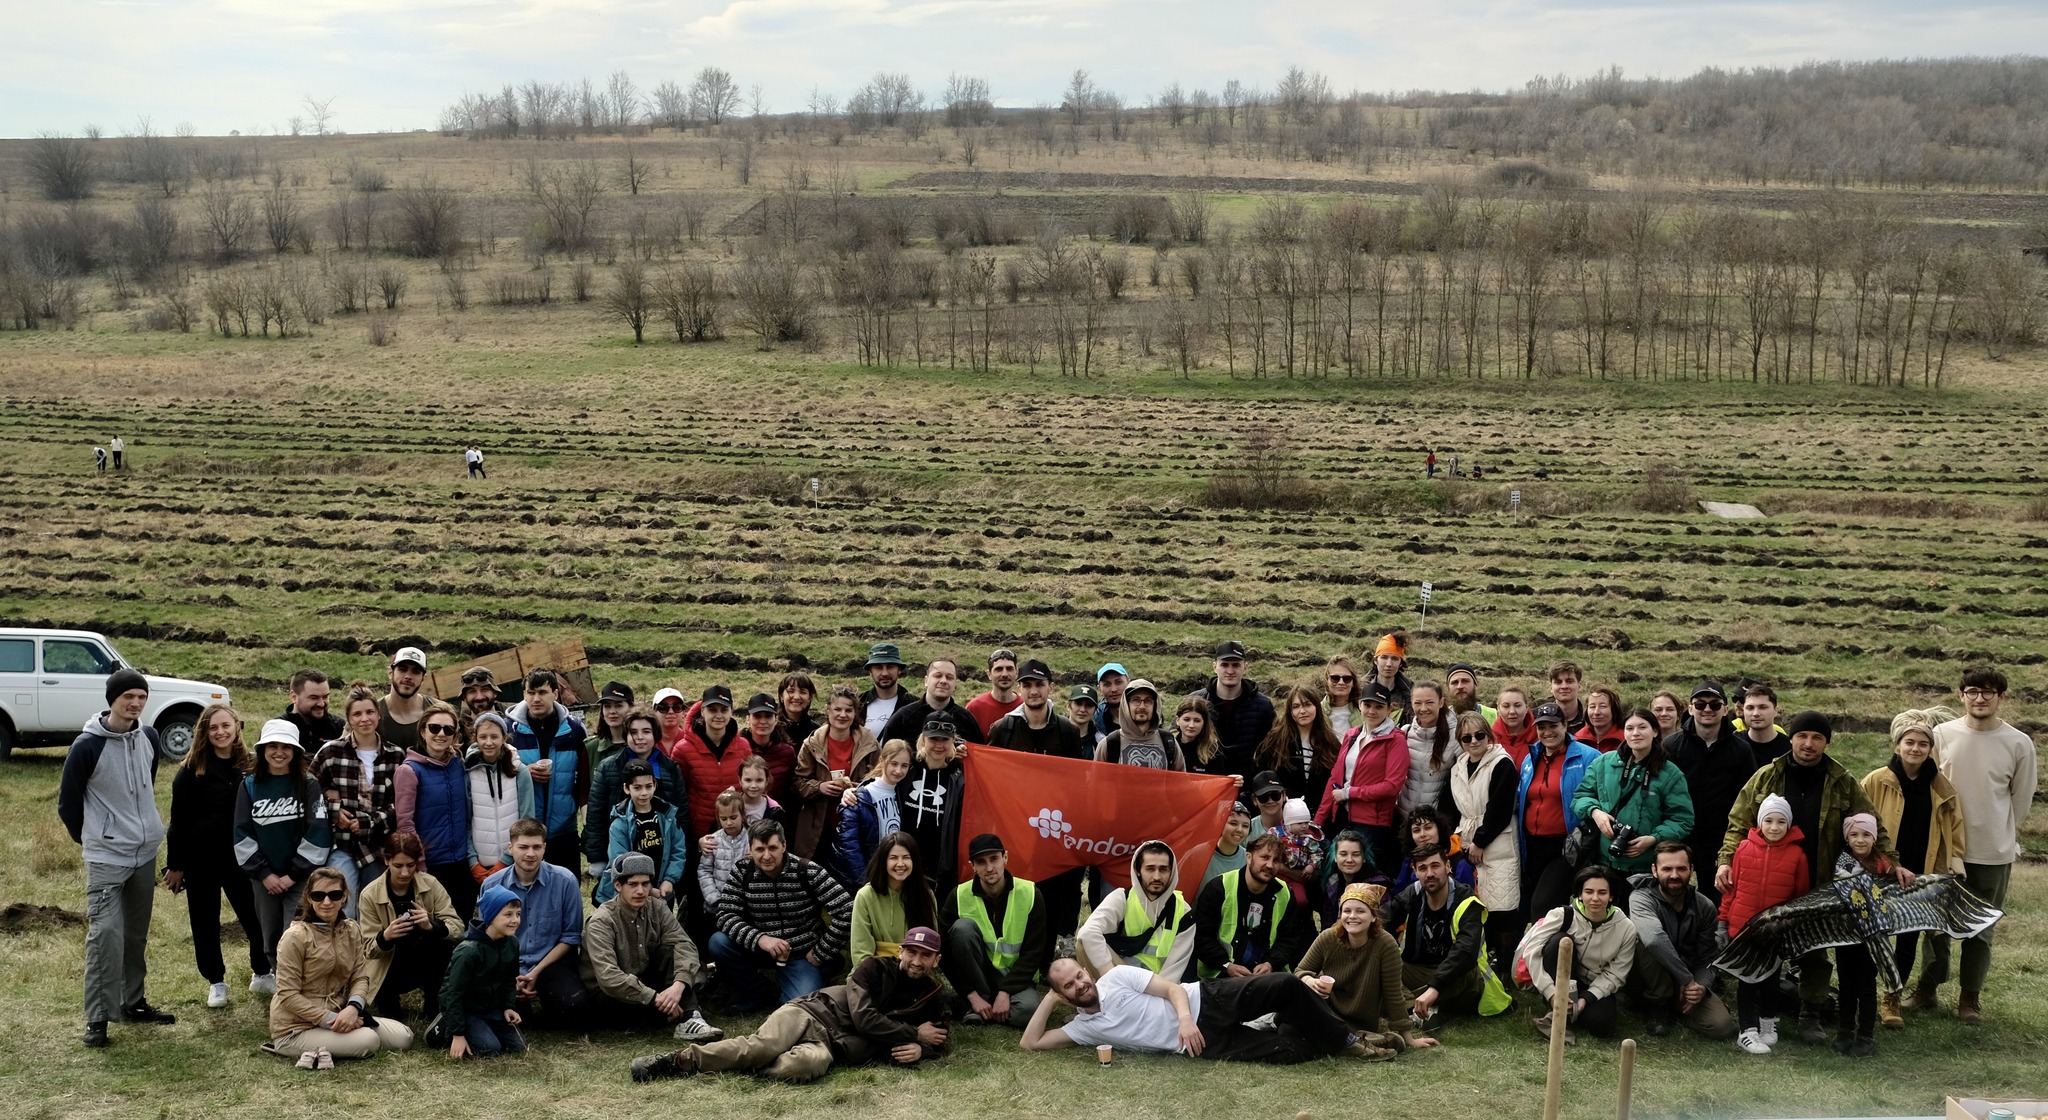 Peste 100 de voluntari au venit să contribuie la salvarea râului. Foto: Plantăm fapte bune în Moldova